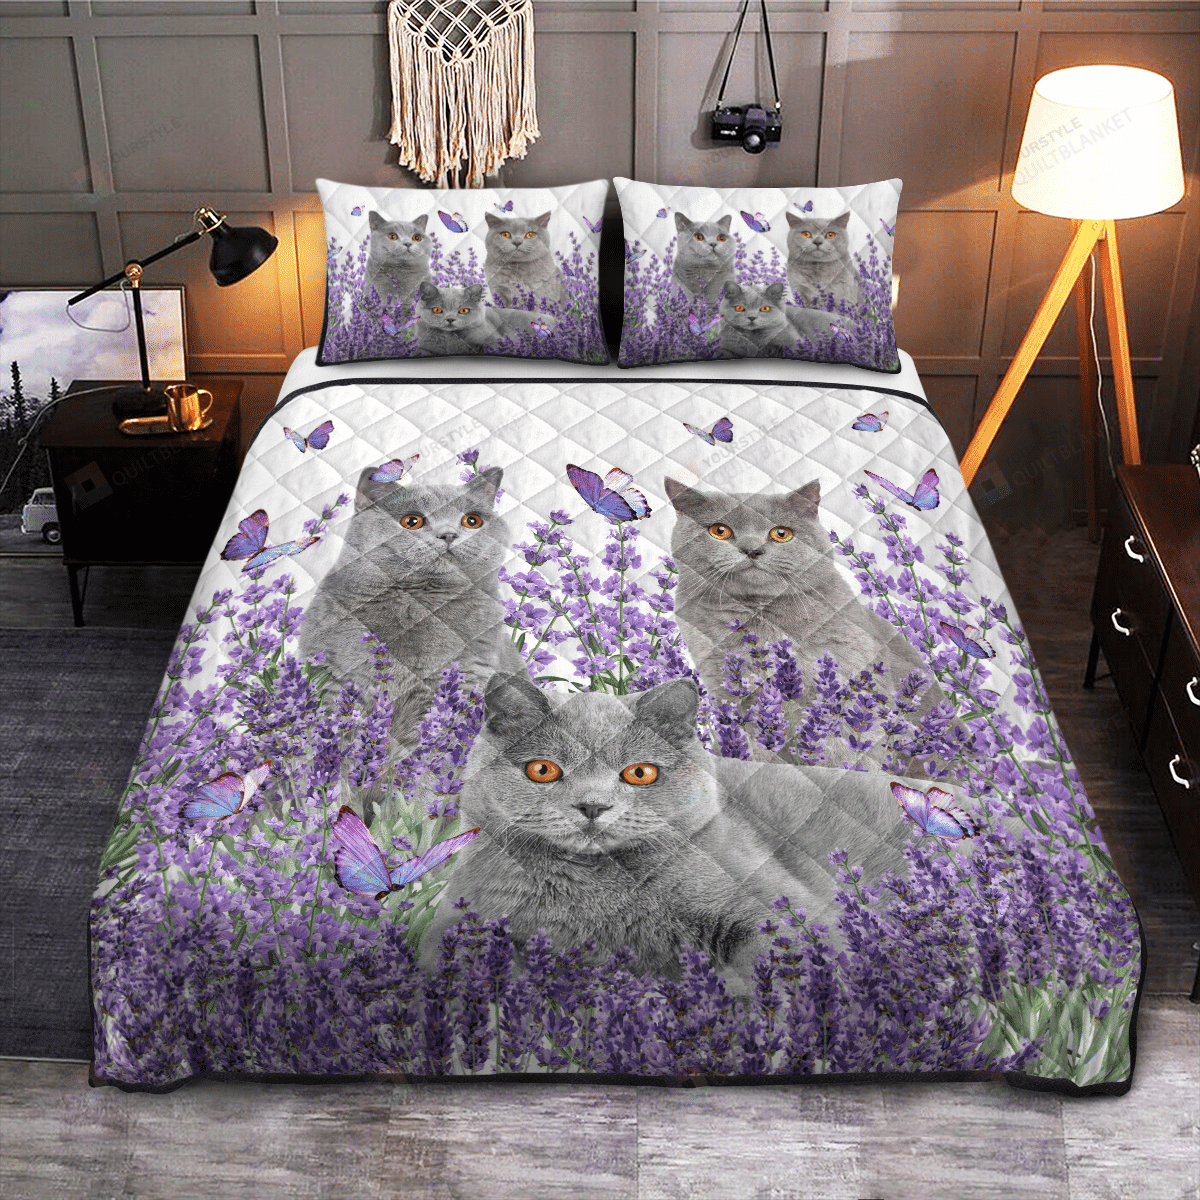 British Shorthair Cat In Lavender Garden Quilt Bedding Set